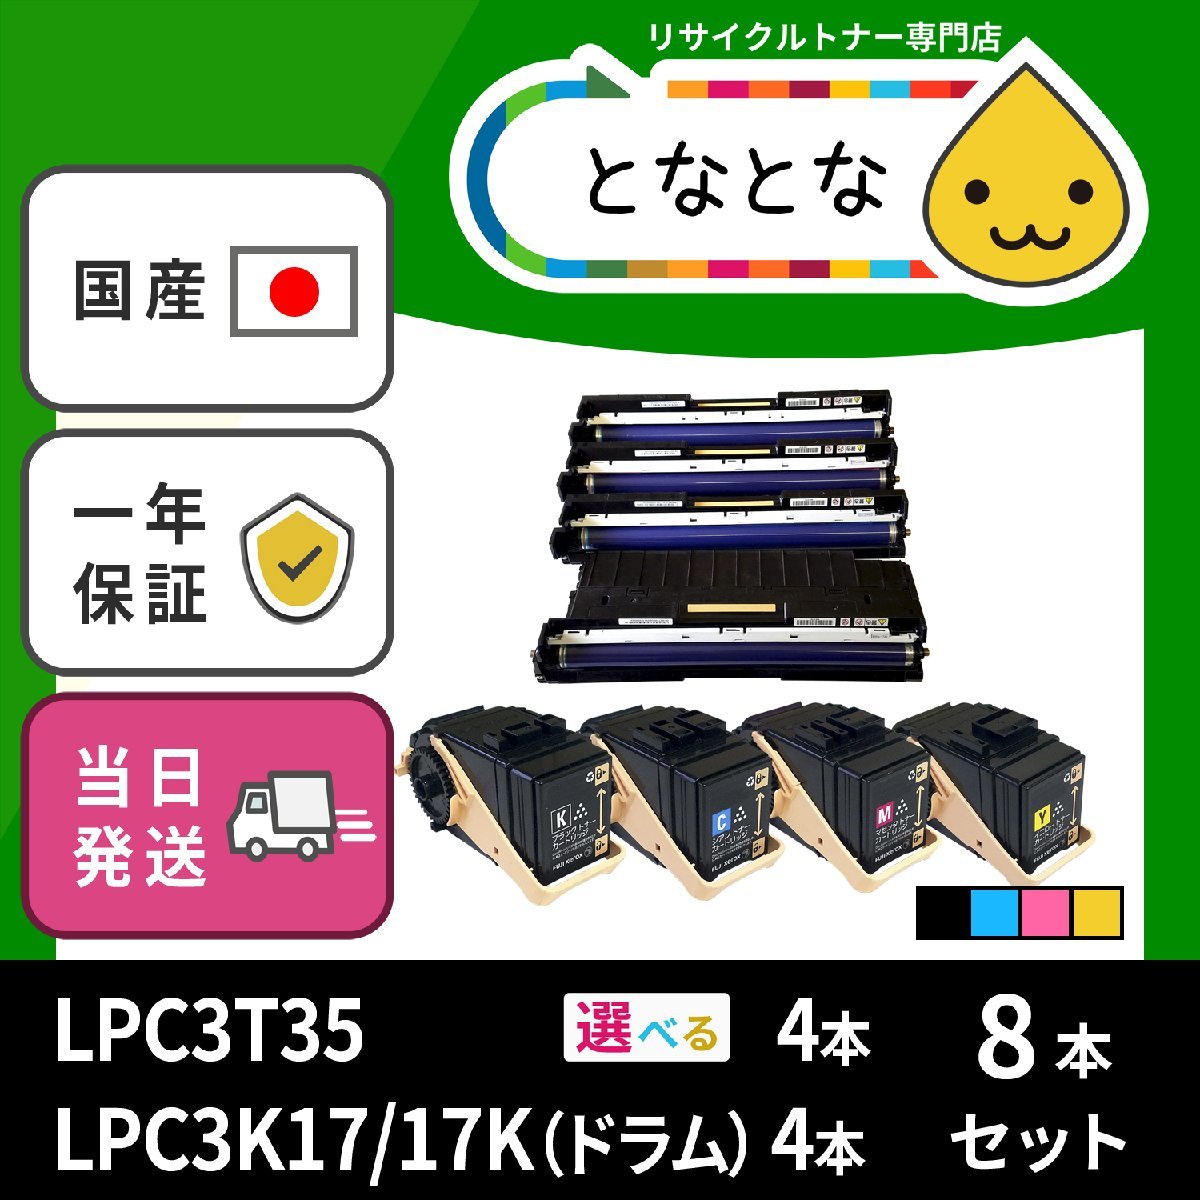 複合機、コピー機 LPC3K17K LPC3K17 LPC3T35 ドラム4本トナー選べる4色 リサイクル LP-S6160 LP-S6160C0  安い 購入